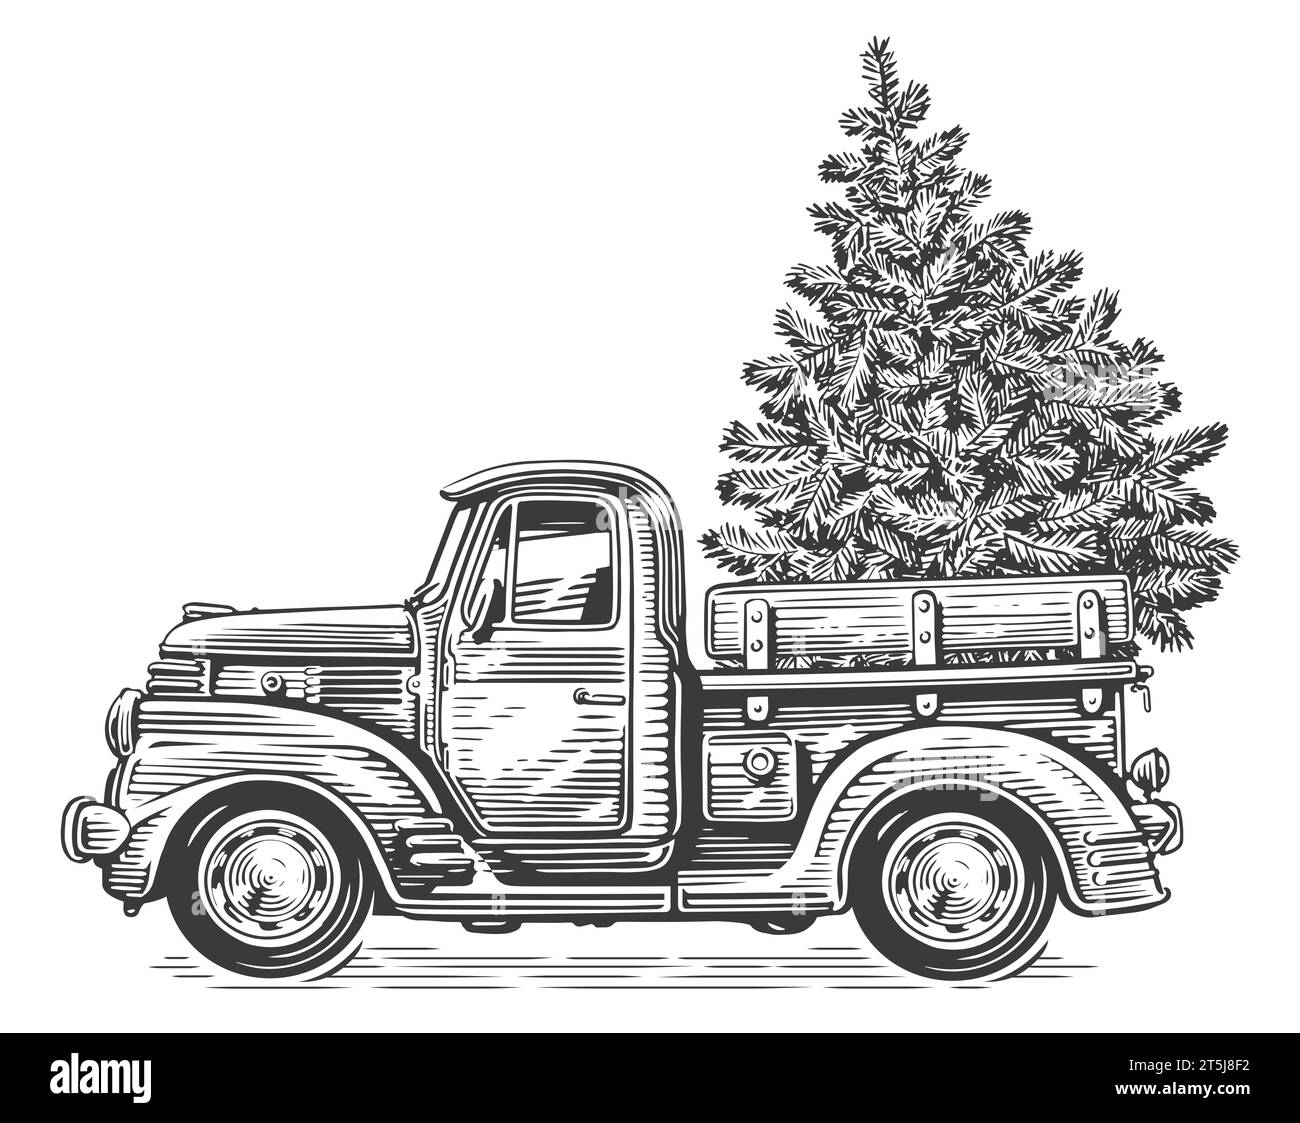 Camion rétro de Noël avec pin. Dessin dessiné à la main style de gravure d'illustration vintage Banque D'Images